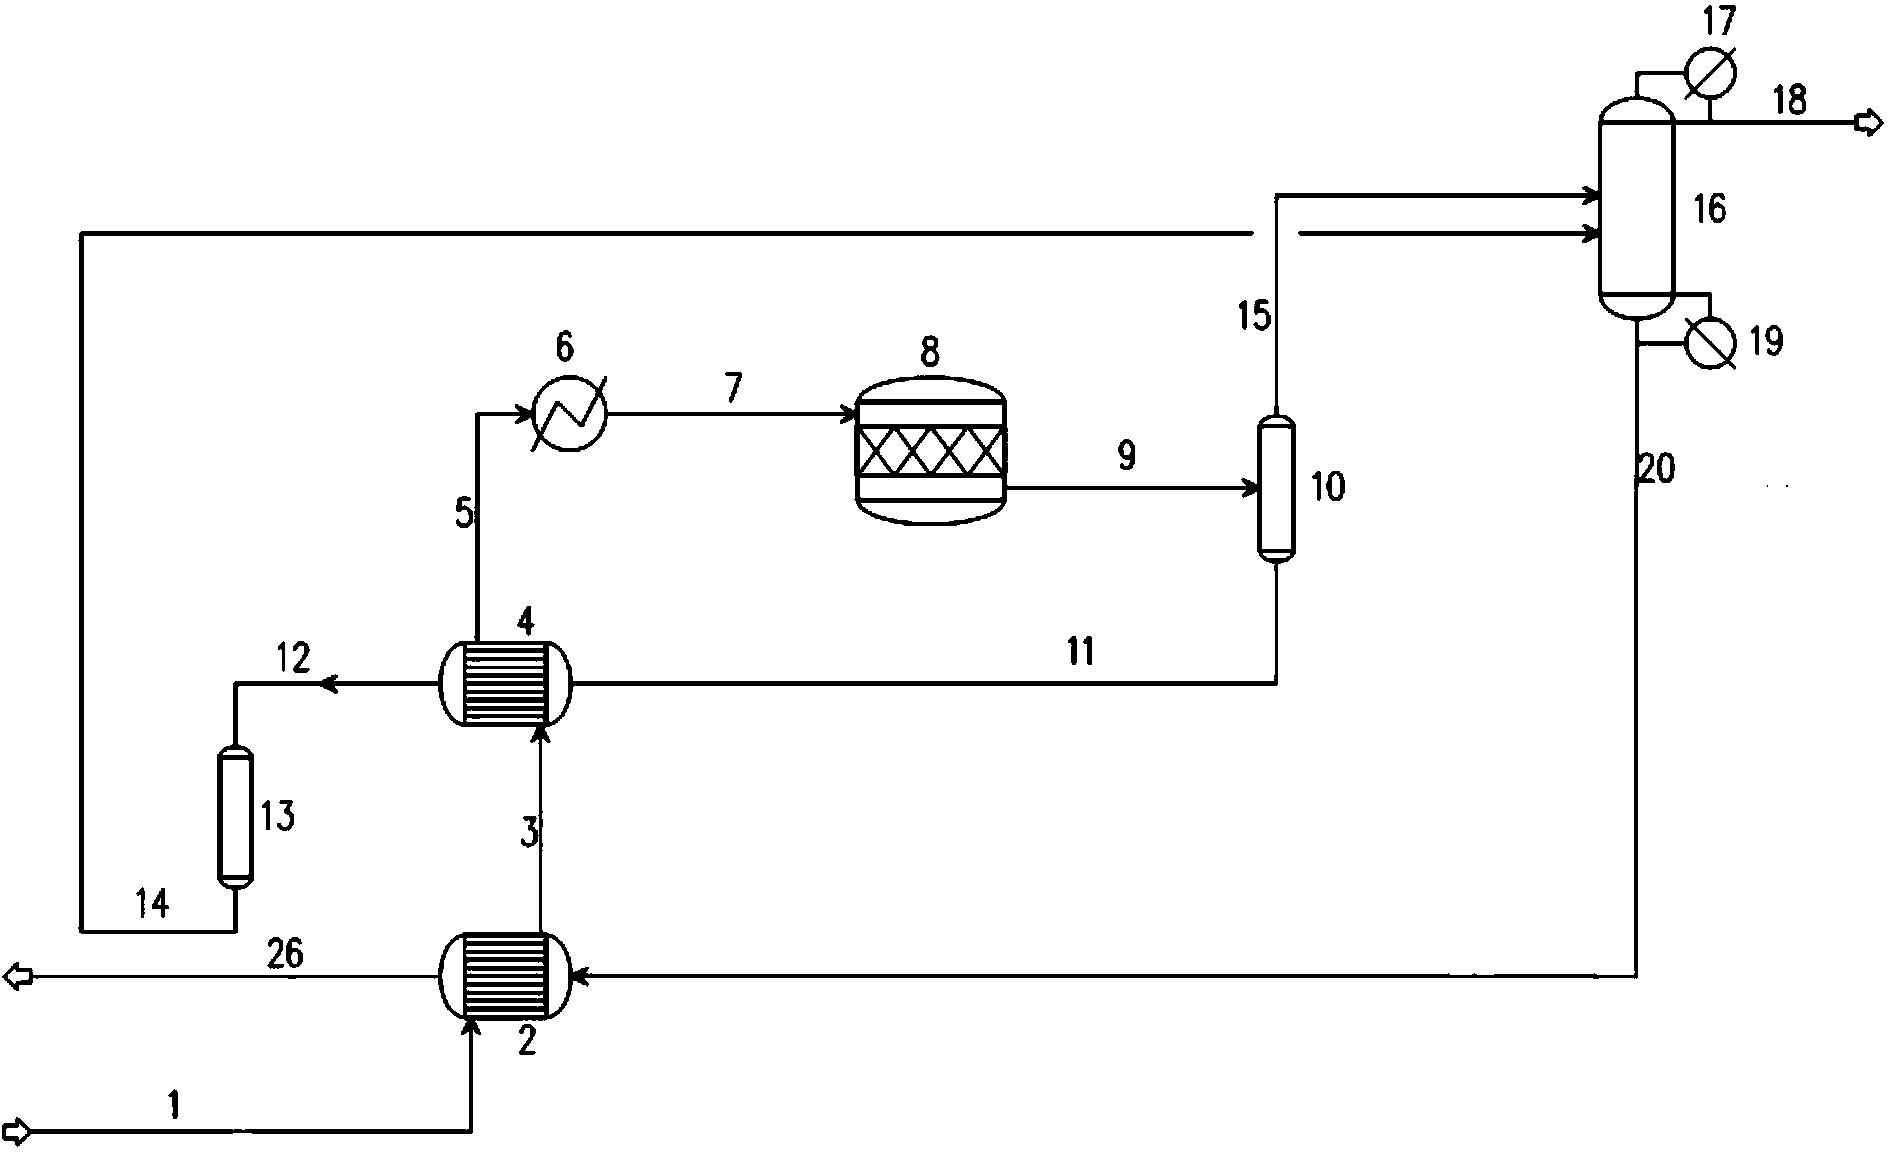 Method for preparing dimethyl ether through methanol dehydration